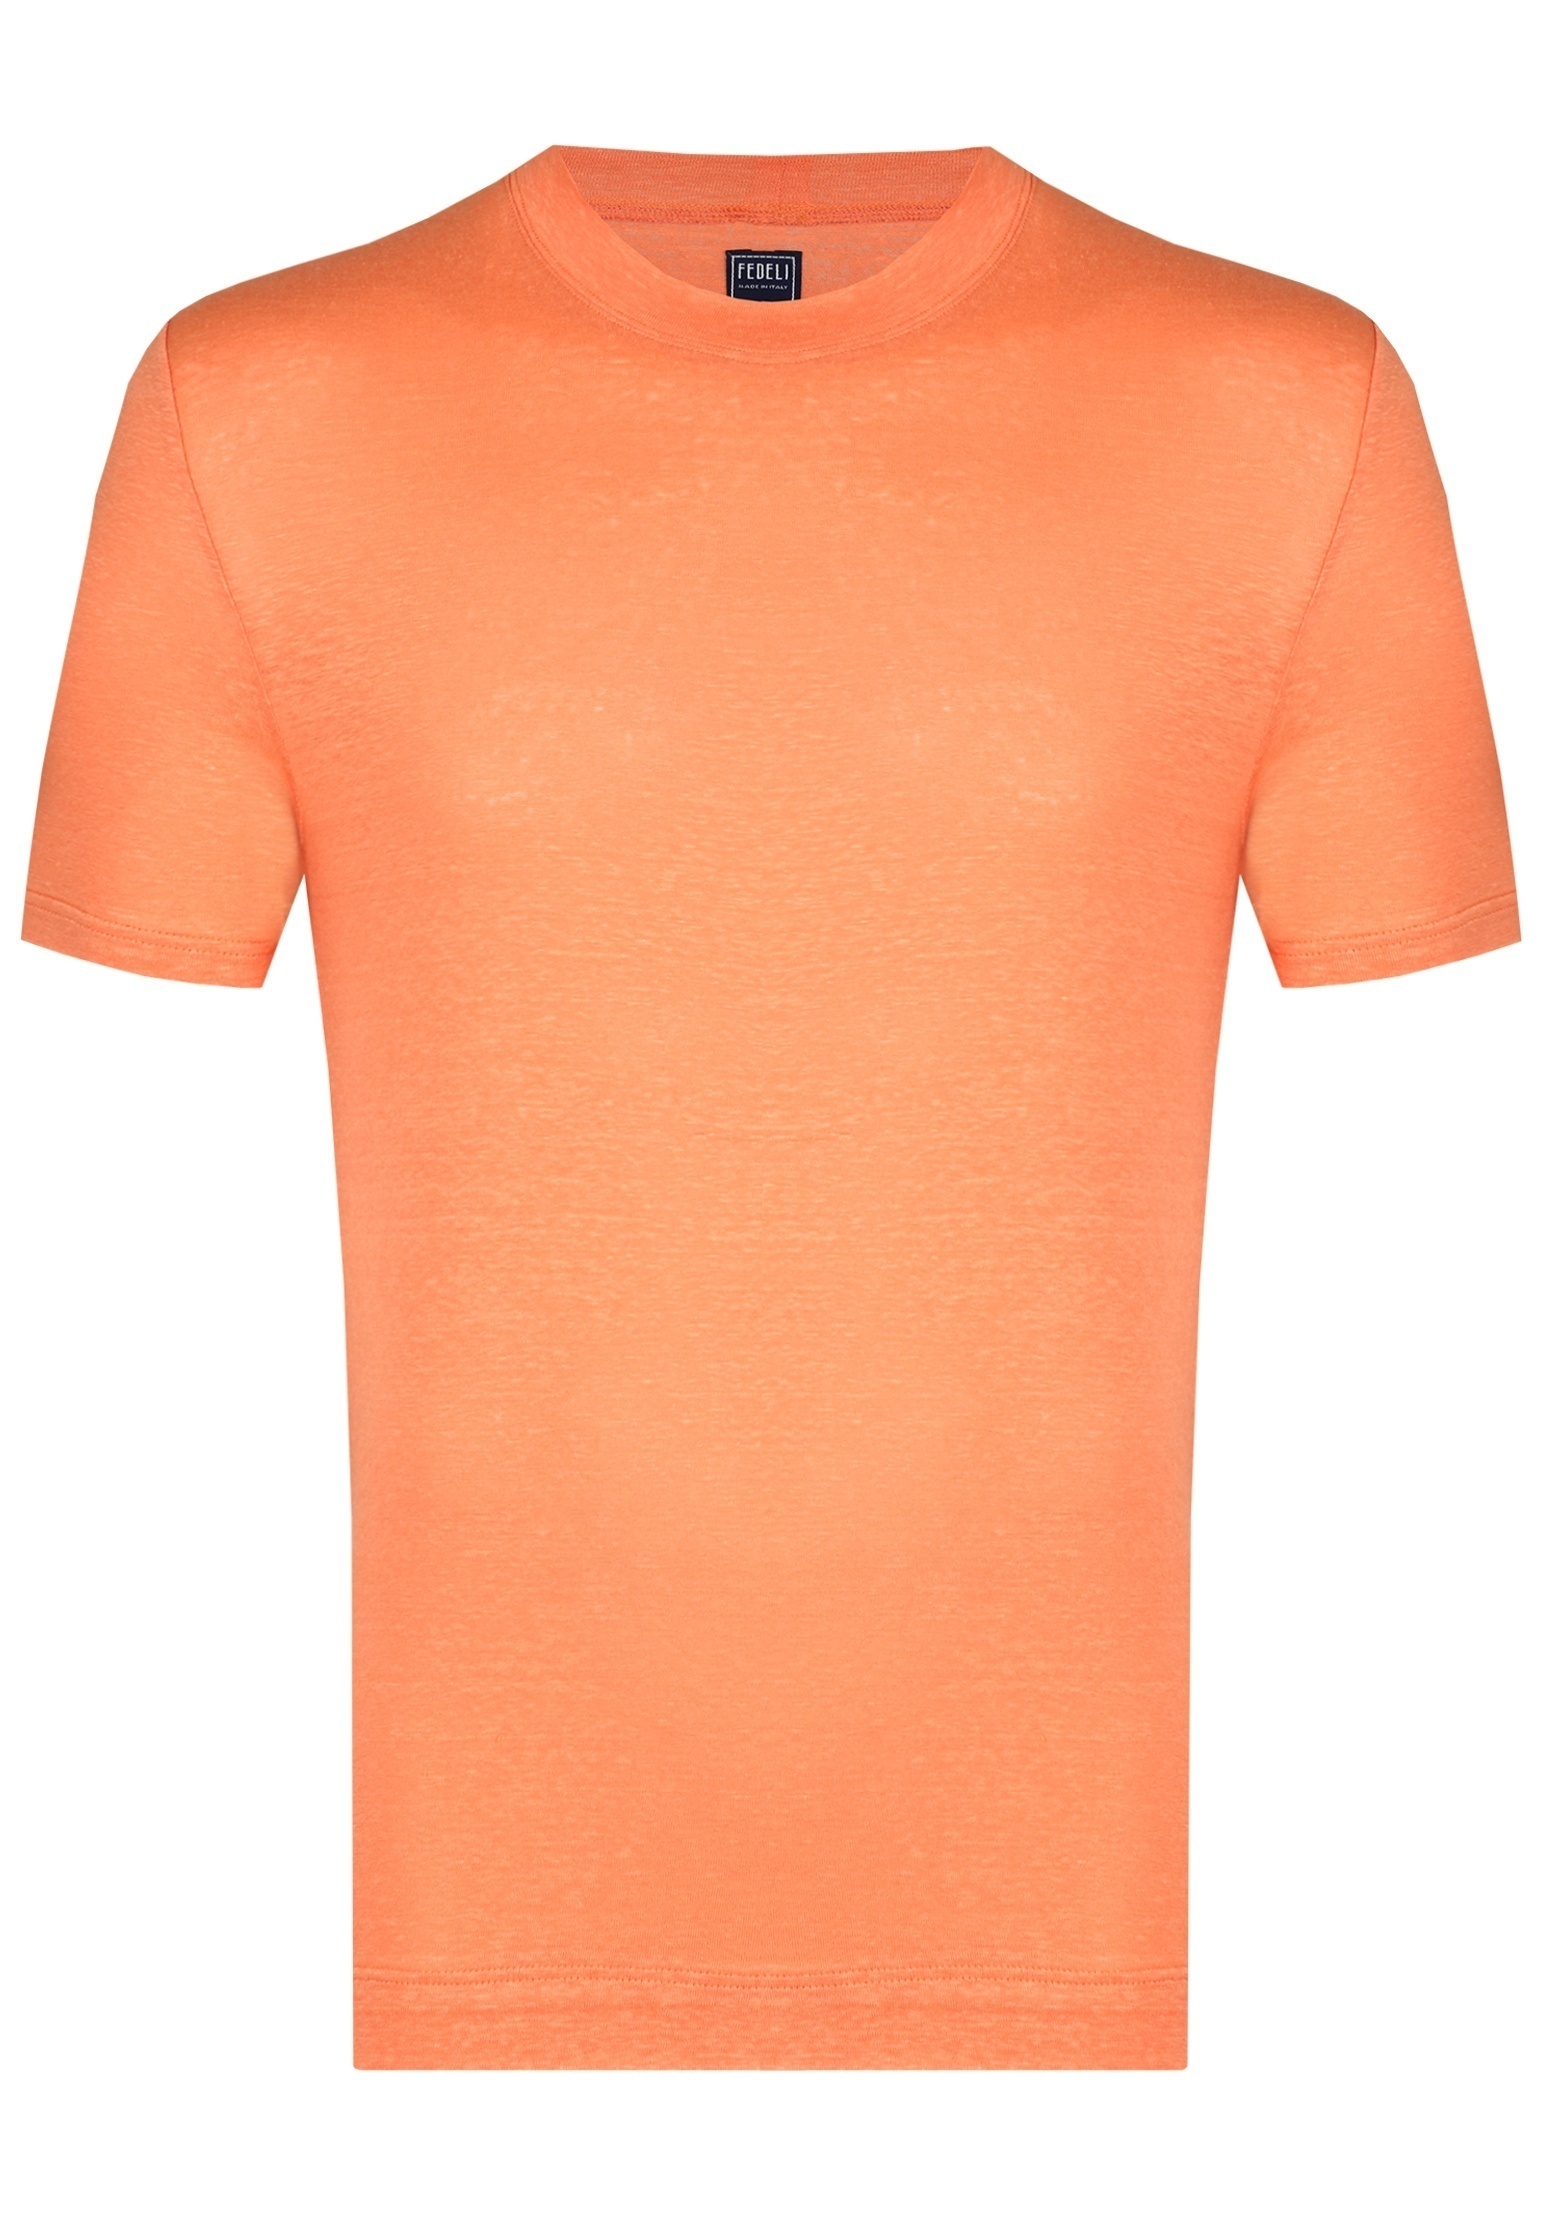 мужская футболка fedeli, оранжевая